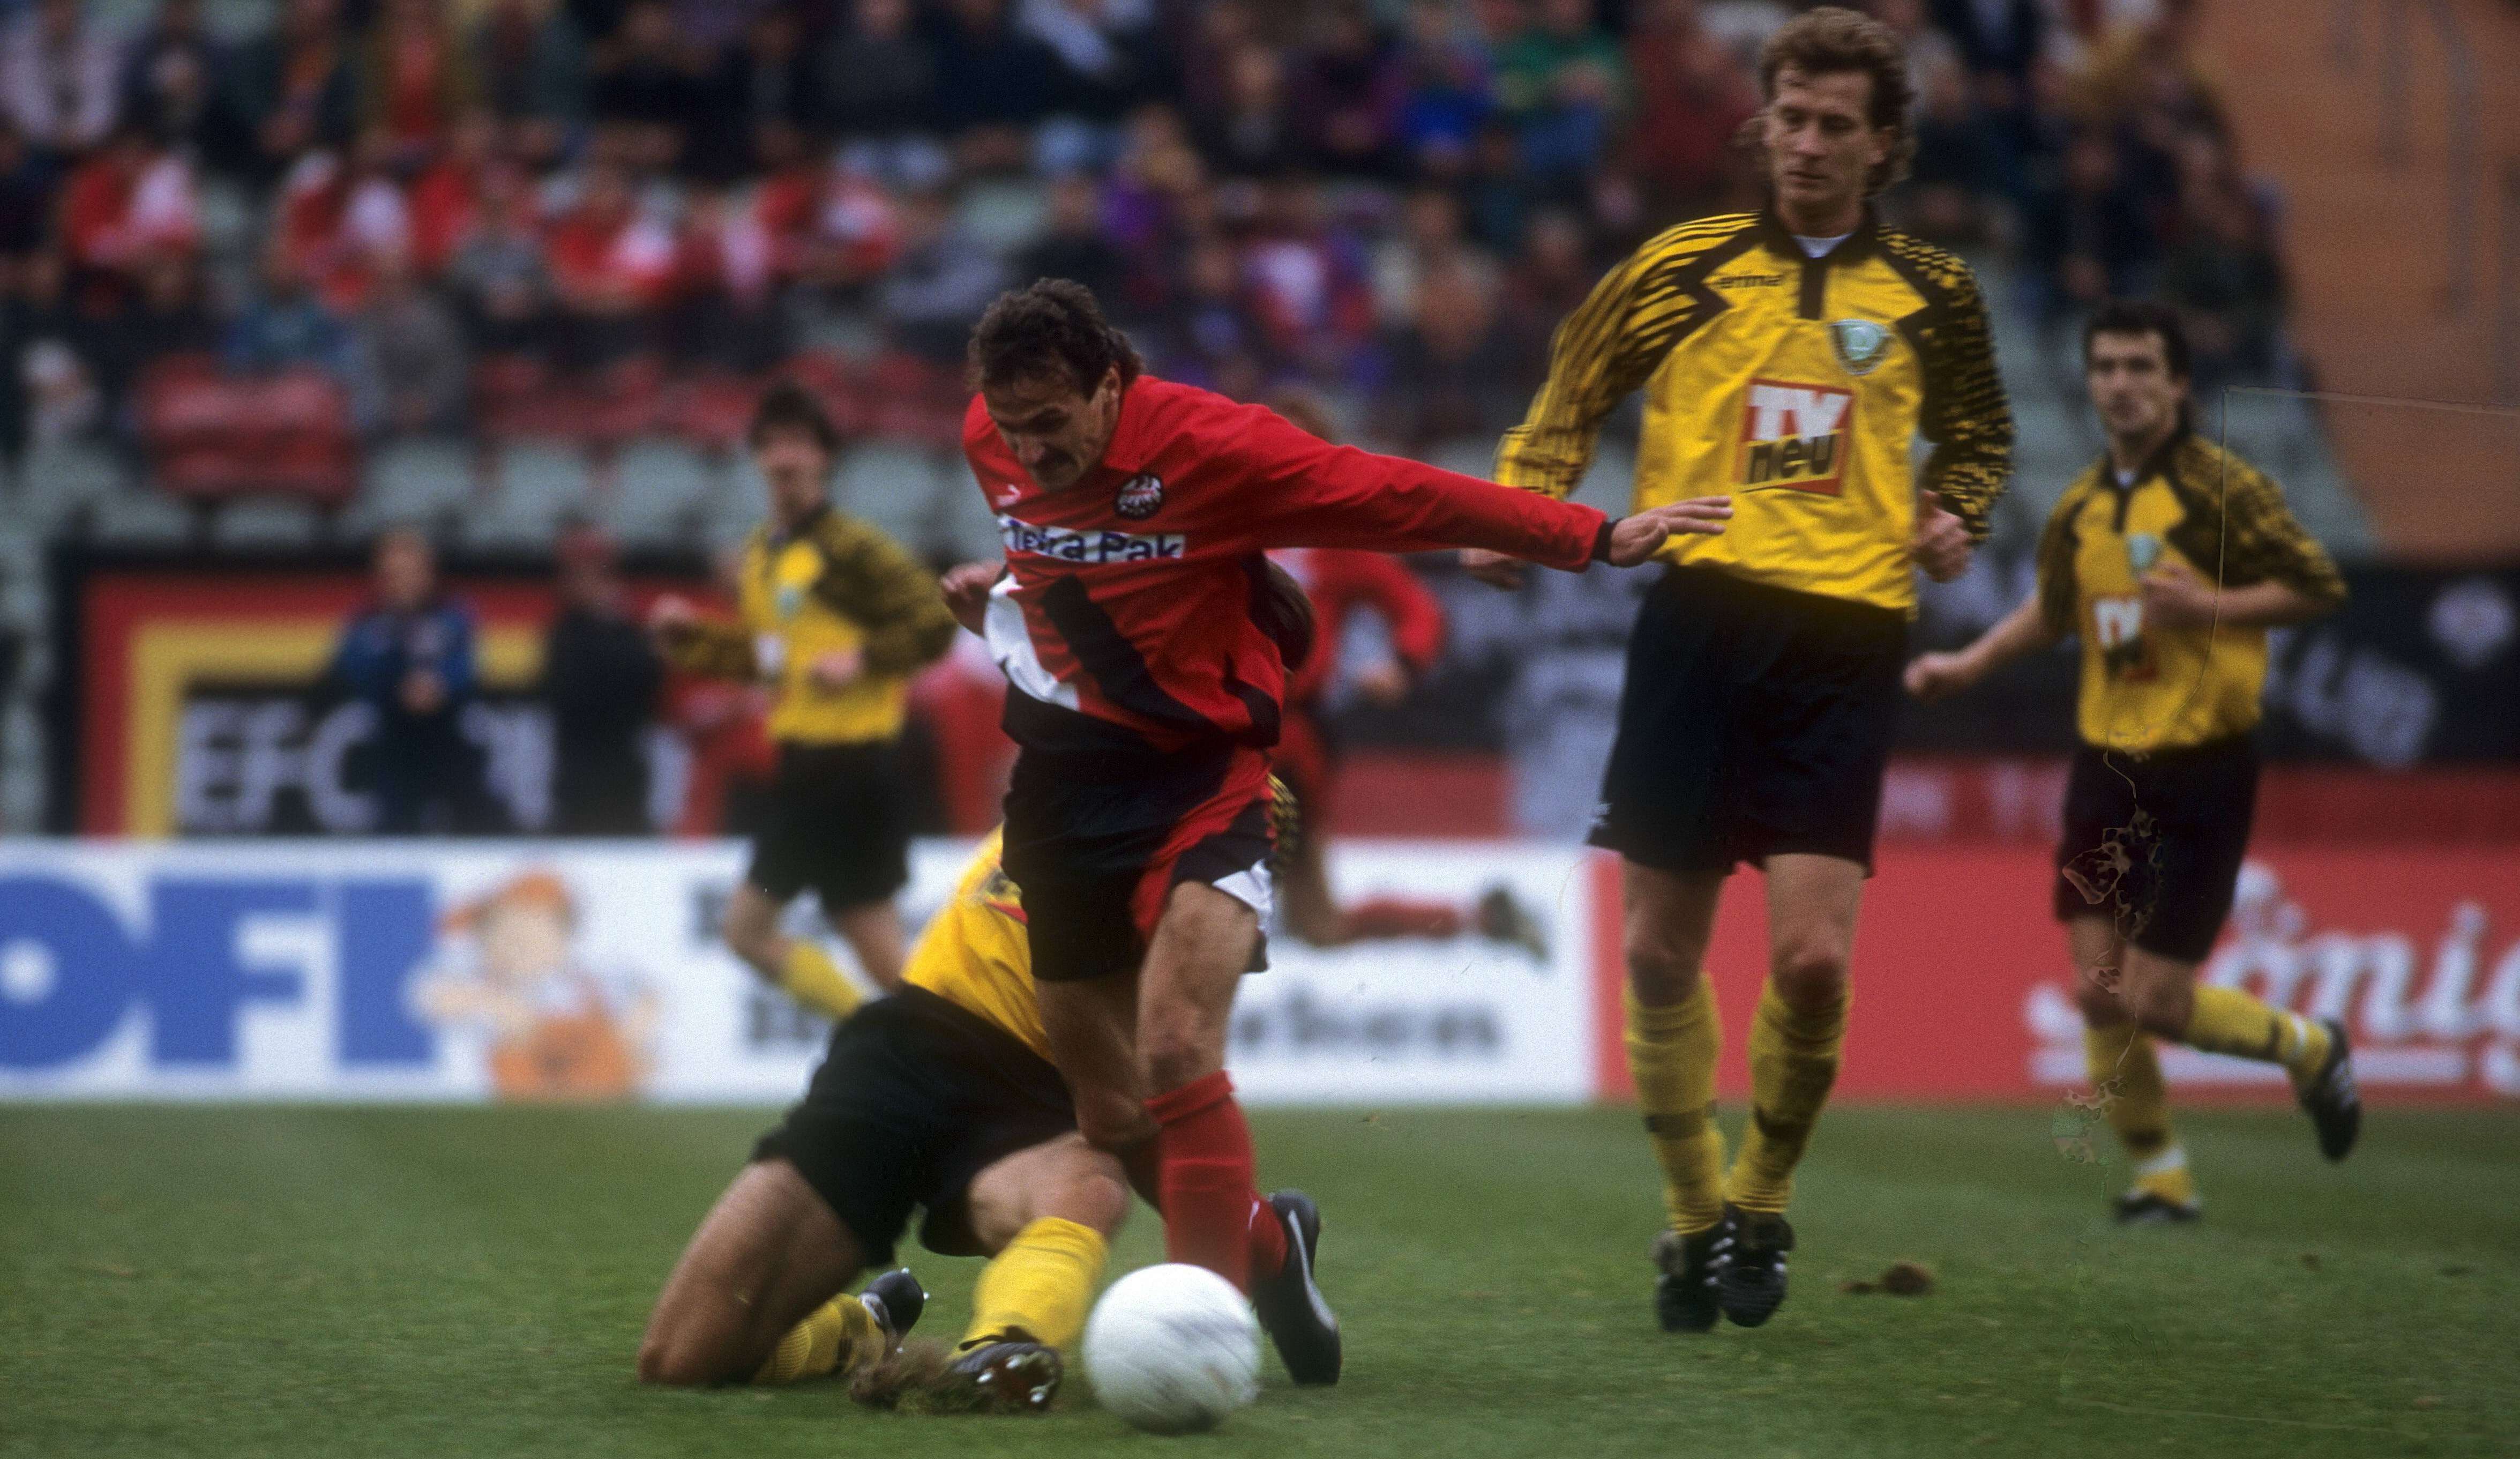 Platz 8: Dynamo Dresden (1995) mit 20 Punkten (vier Siege, acht Remis, 22 Niederlagen) bei 33:68 Toren